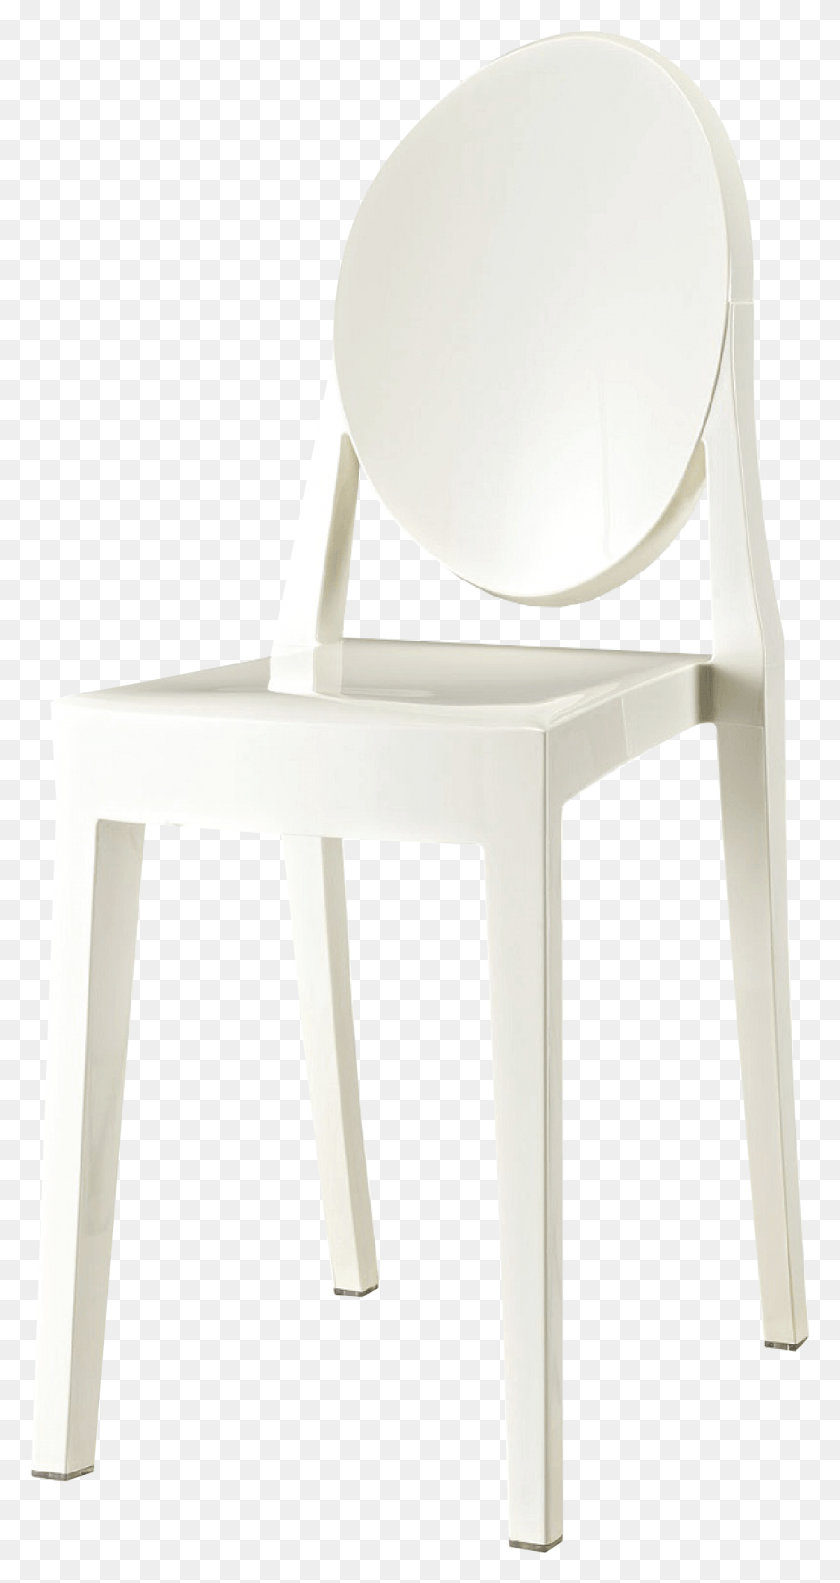 1119x2186 Black Ghost Chair Armless White Ghost Chair Armless Chair, Furniture Descargar Hd Png